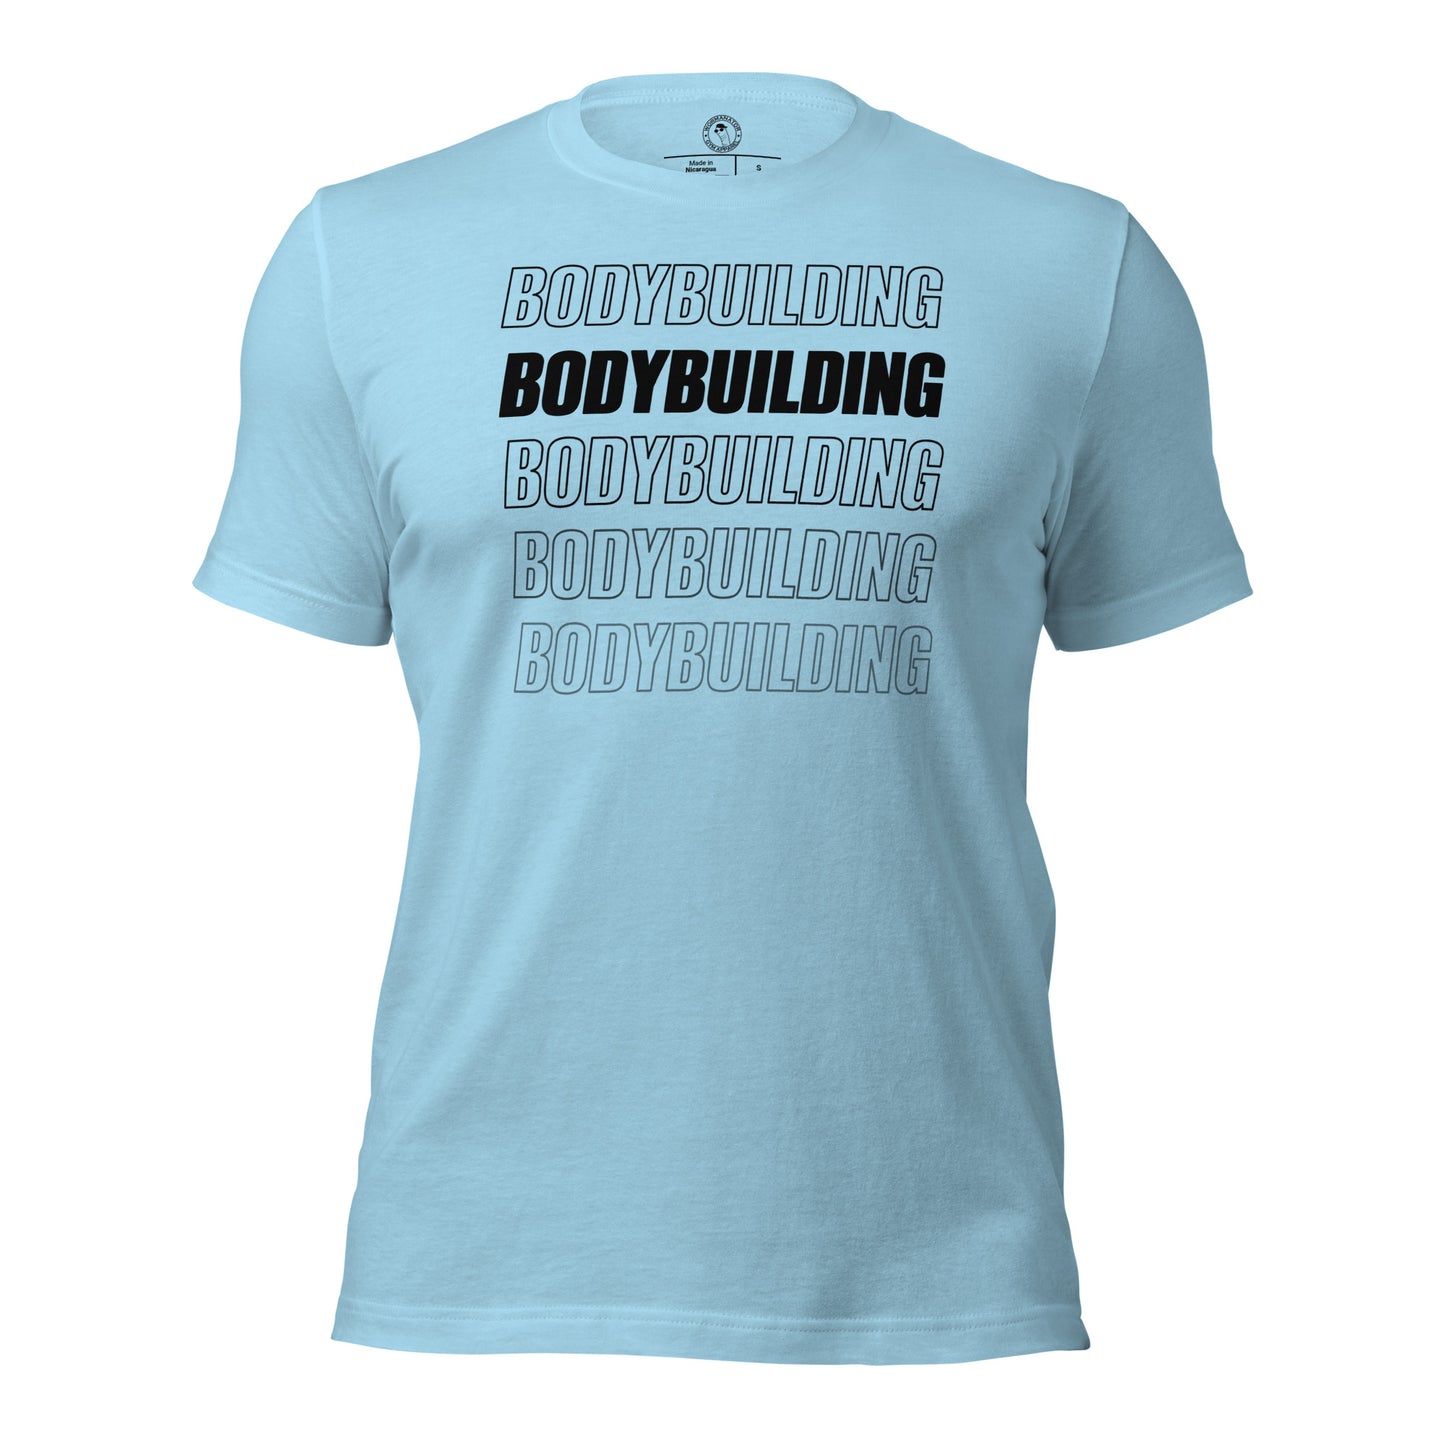 Bodybuilding Shirt in Ocean Blue